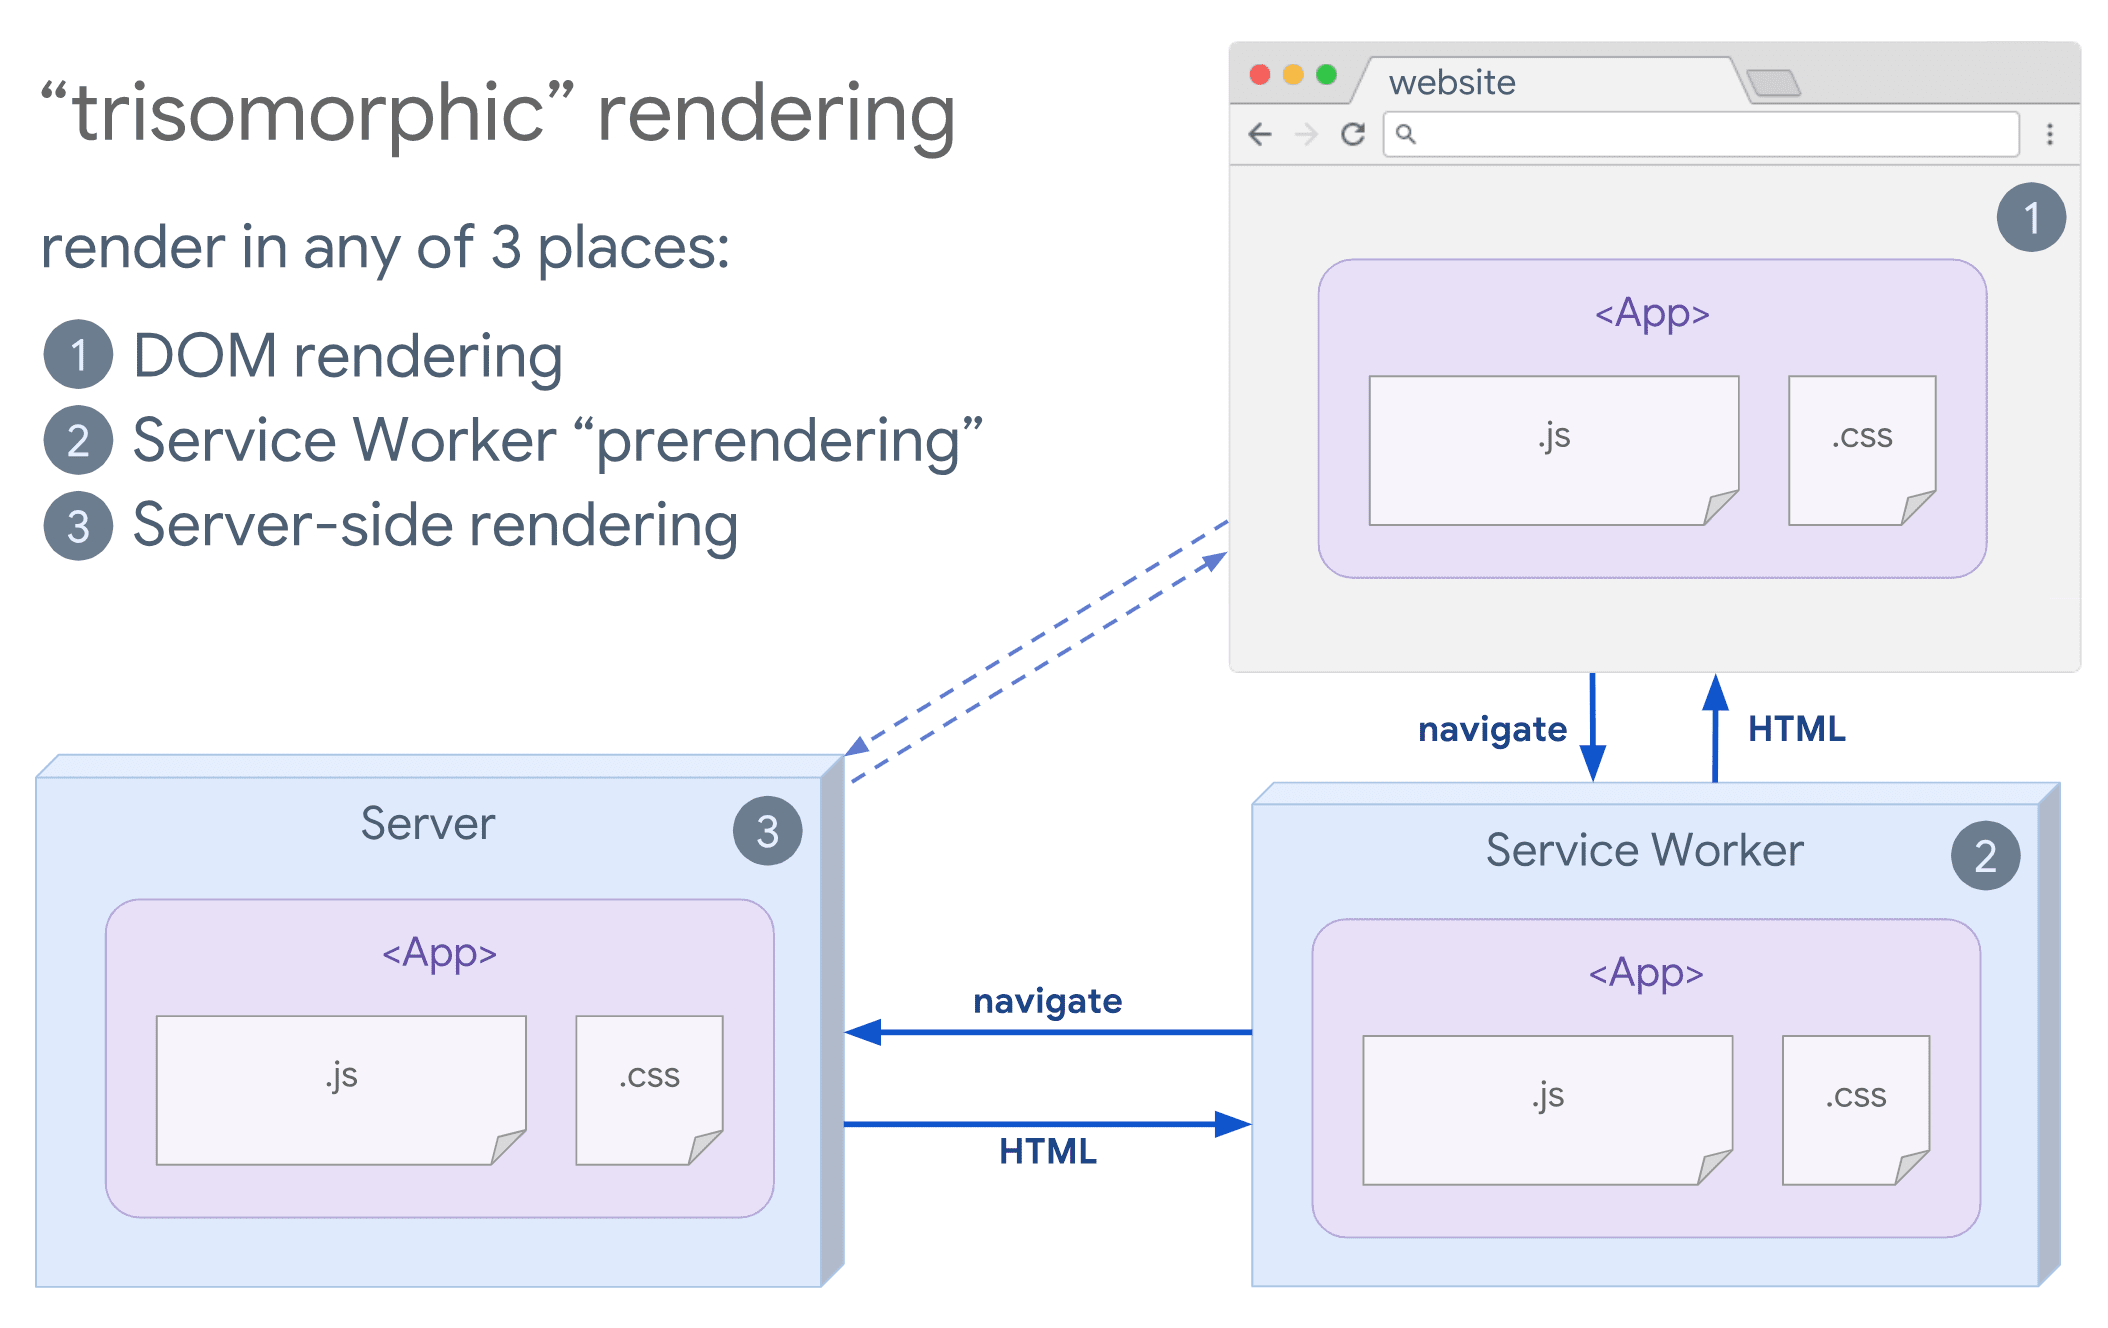 ट्रिसोमॉर्फ़िक रेंडरिंग का डायग्राम, जिसमें ब्राउज़र और सर्विस वर्कर को सर्वर के साथ कम्यूनिकेट करते हुए दिखाया गया है.